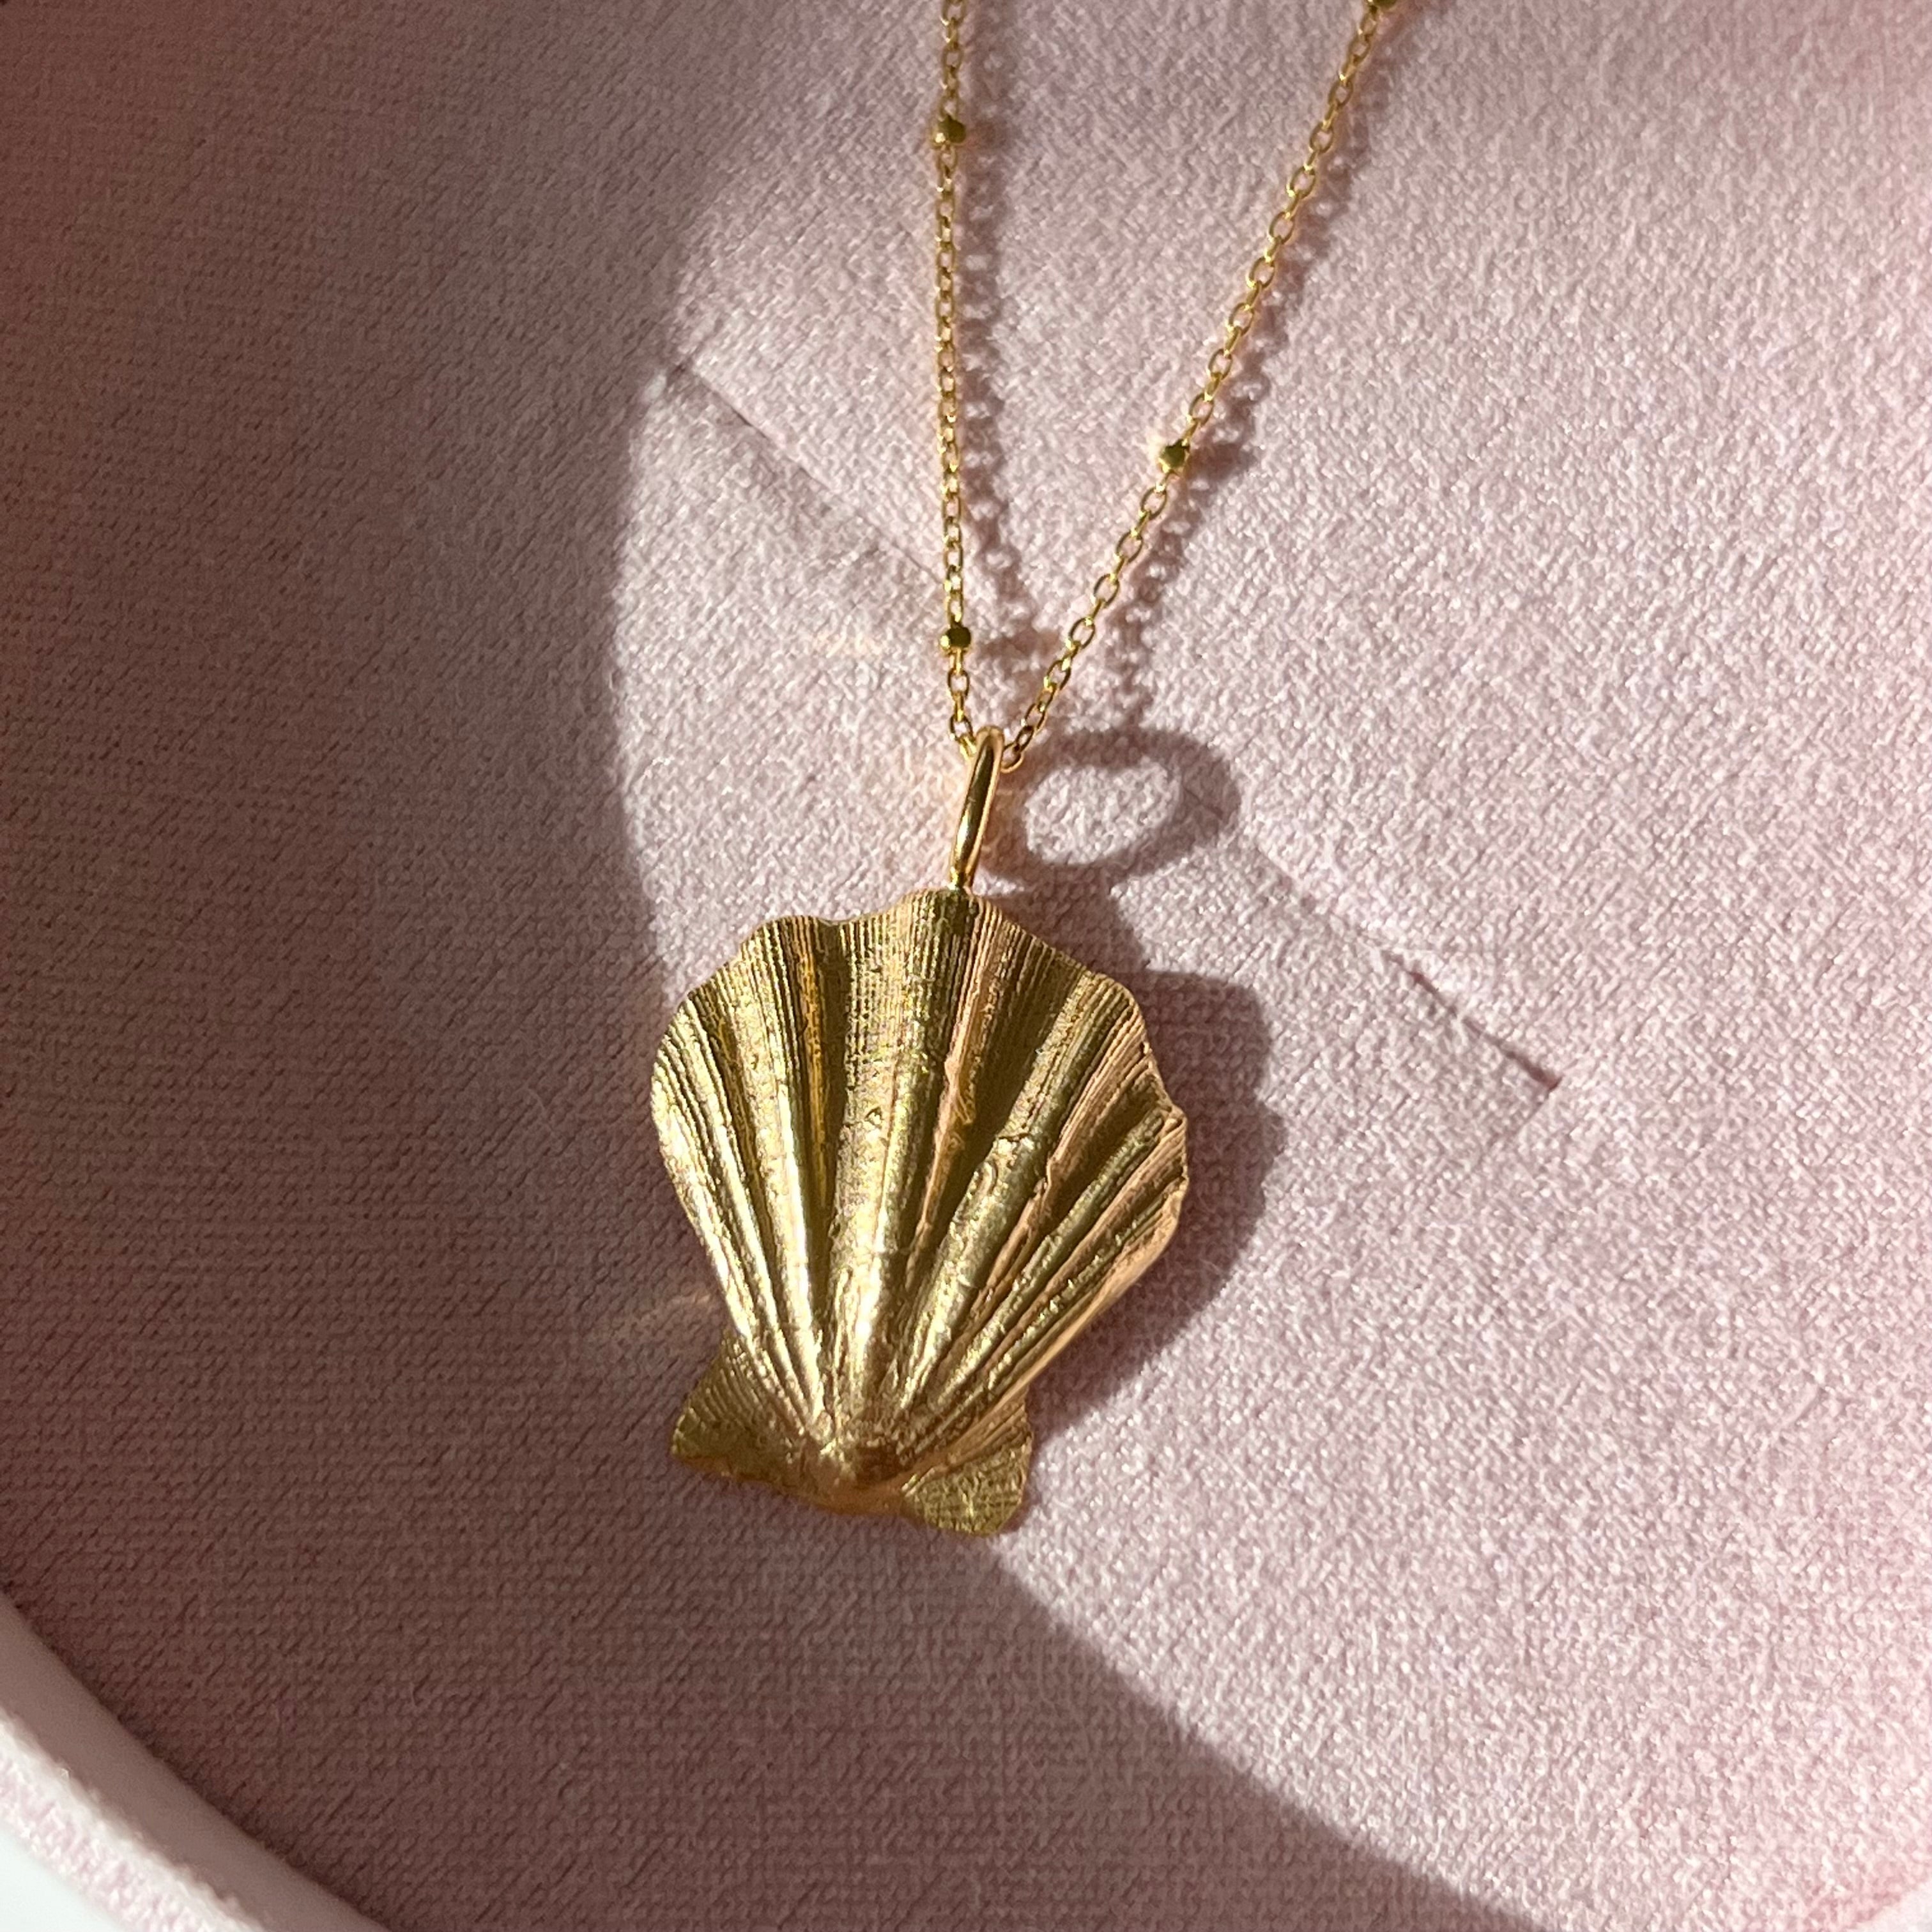 Ocean Treasure Necklace